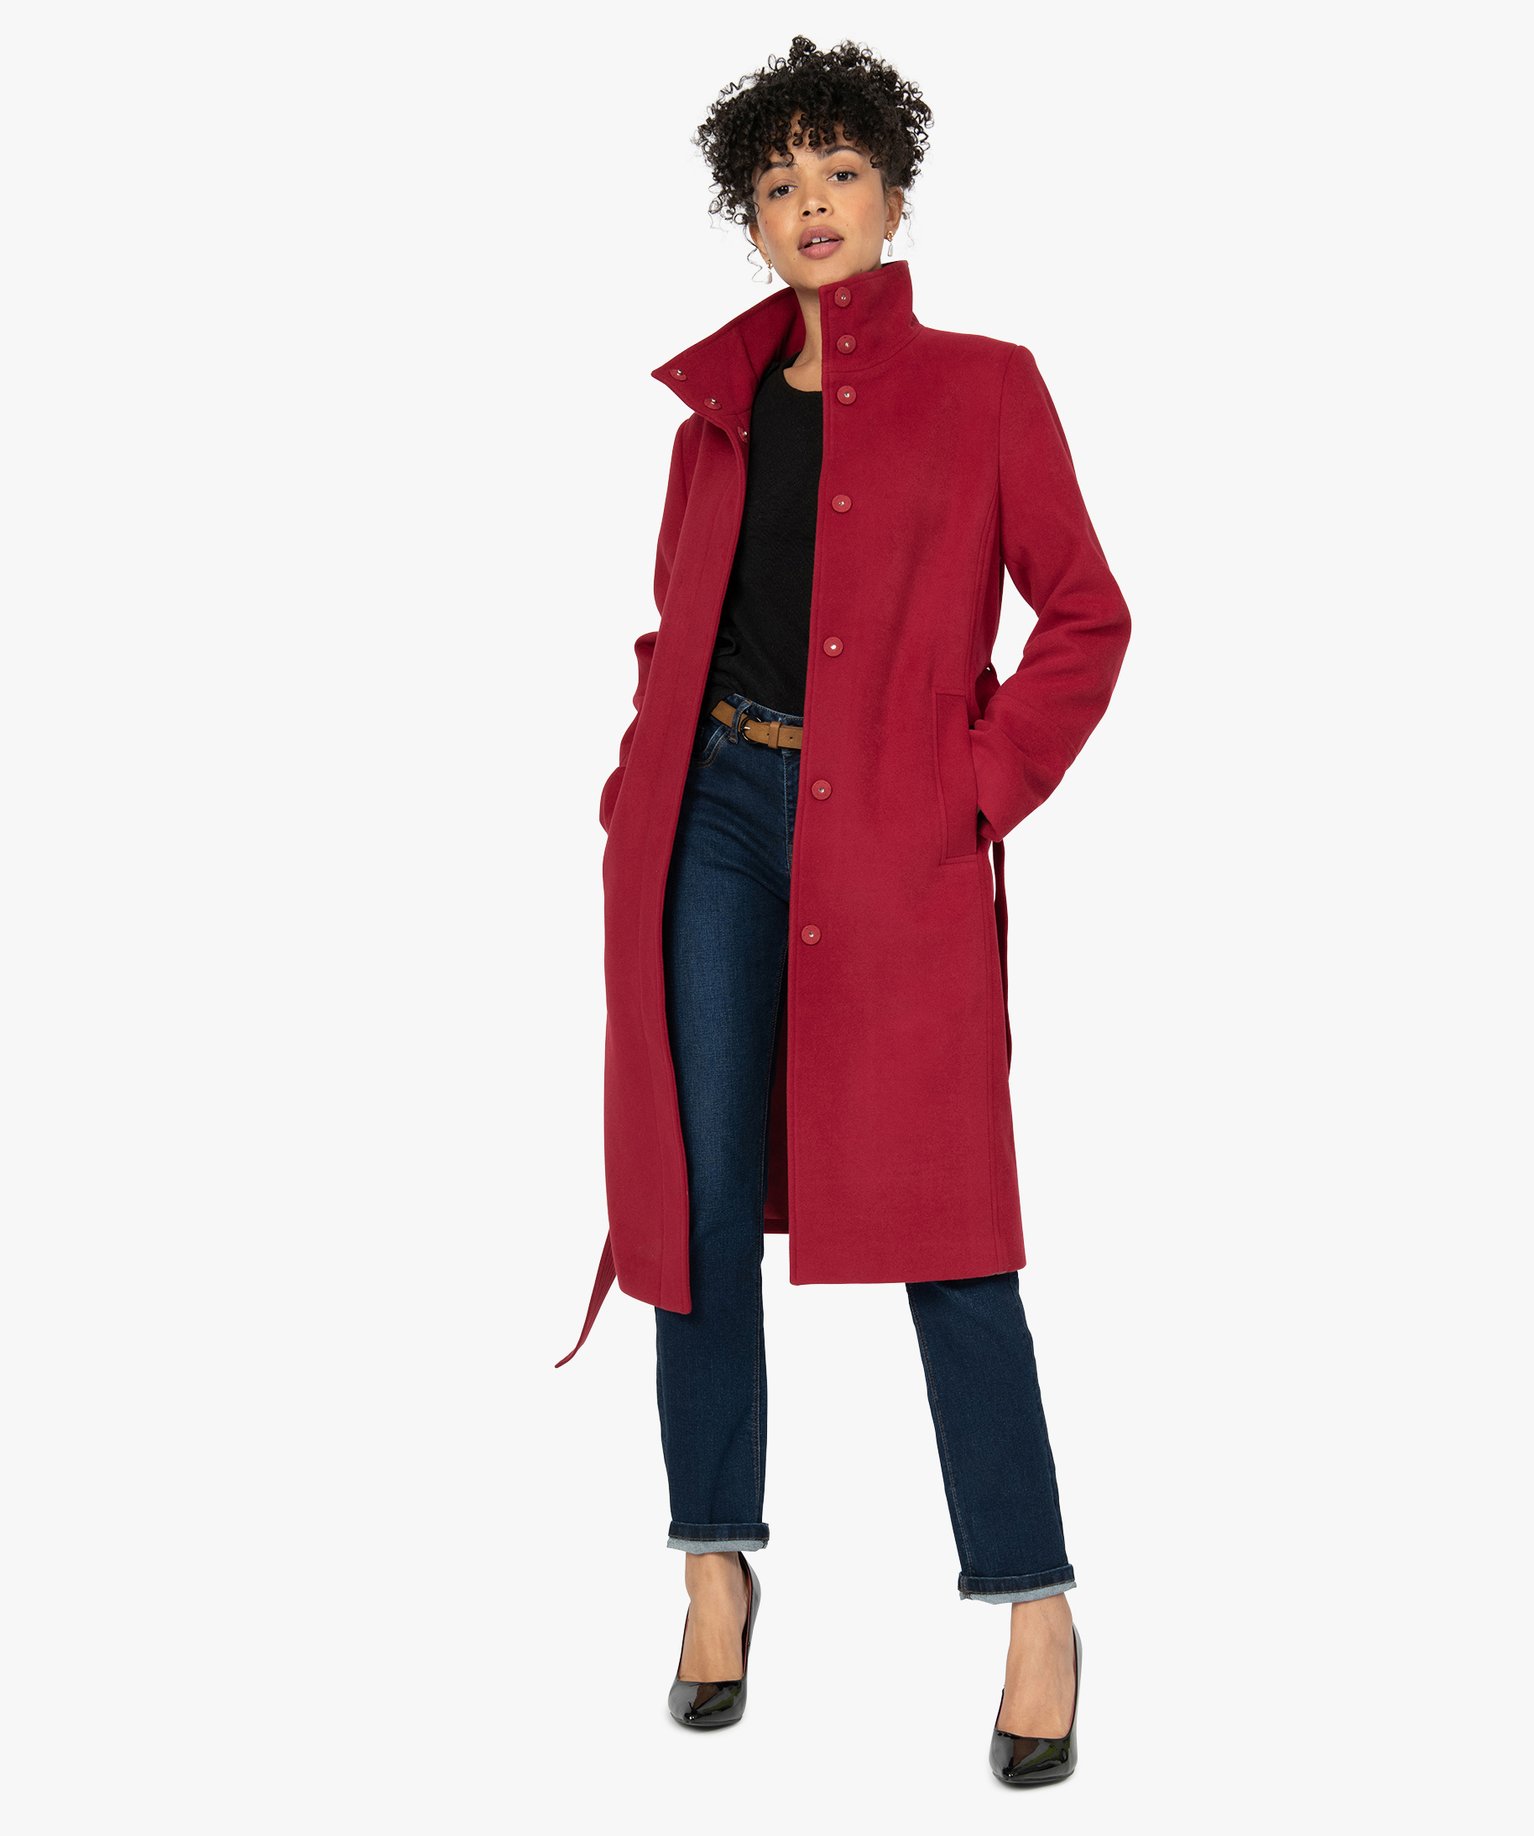 manteau femme rouge et noir